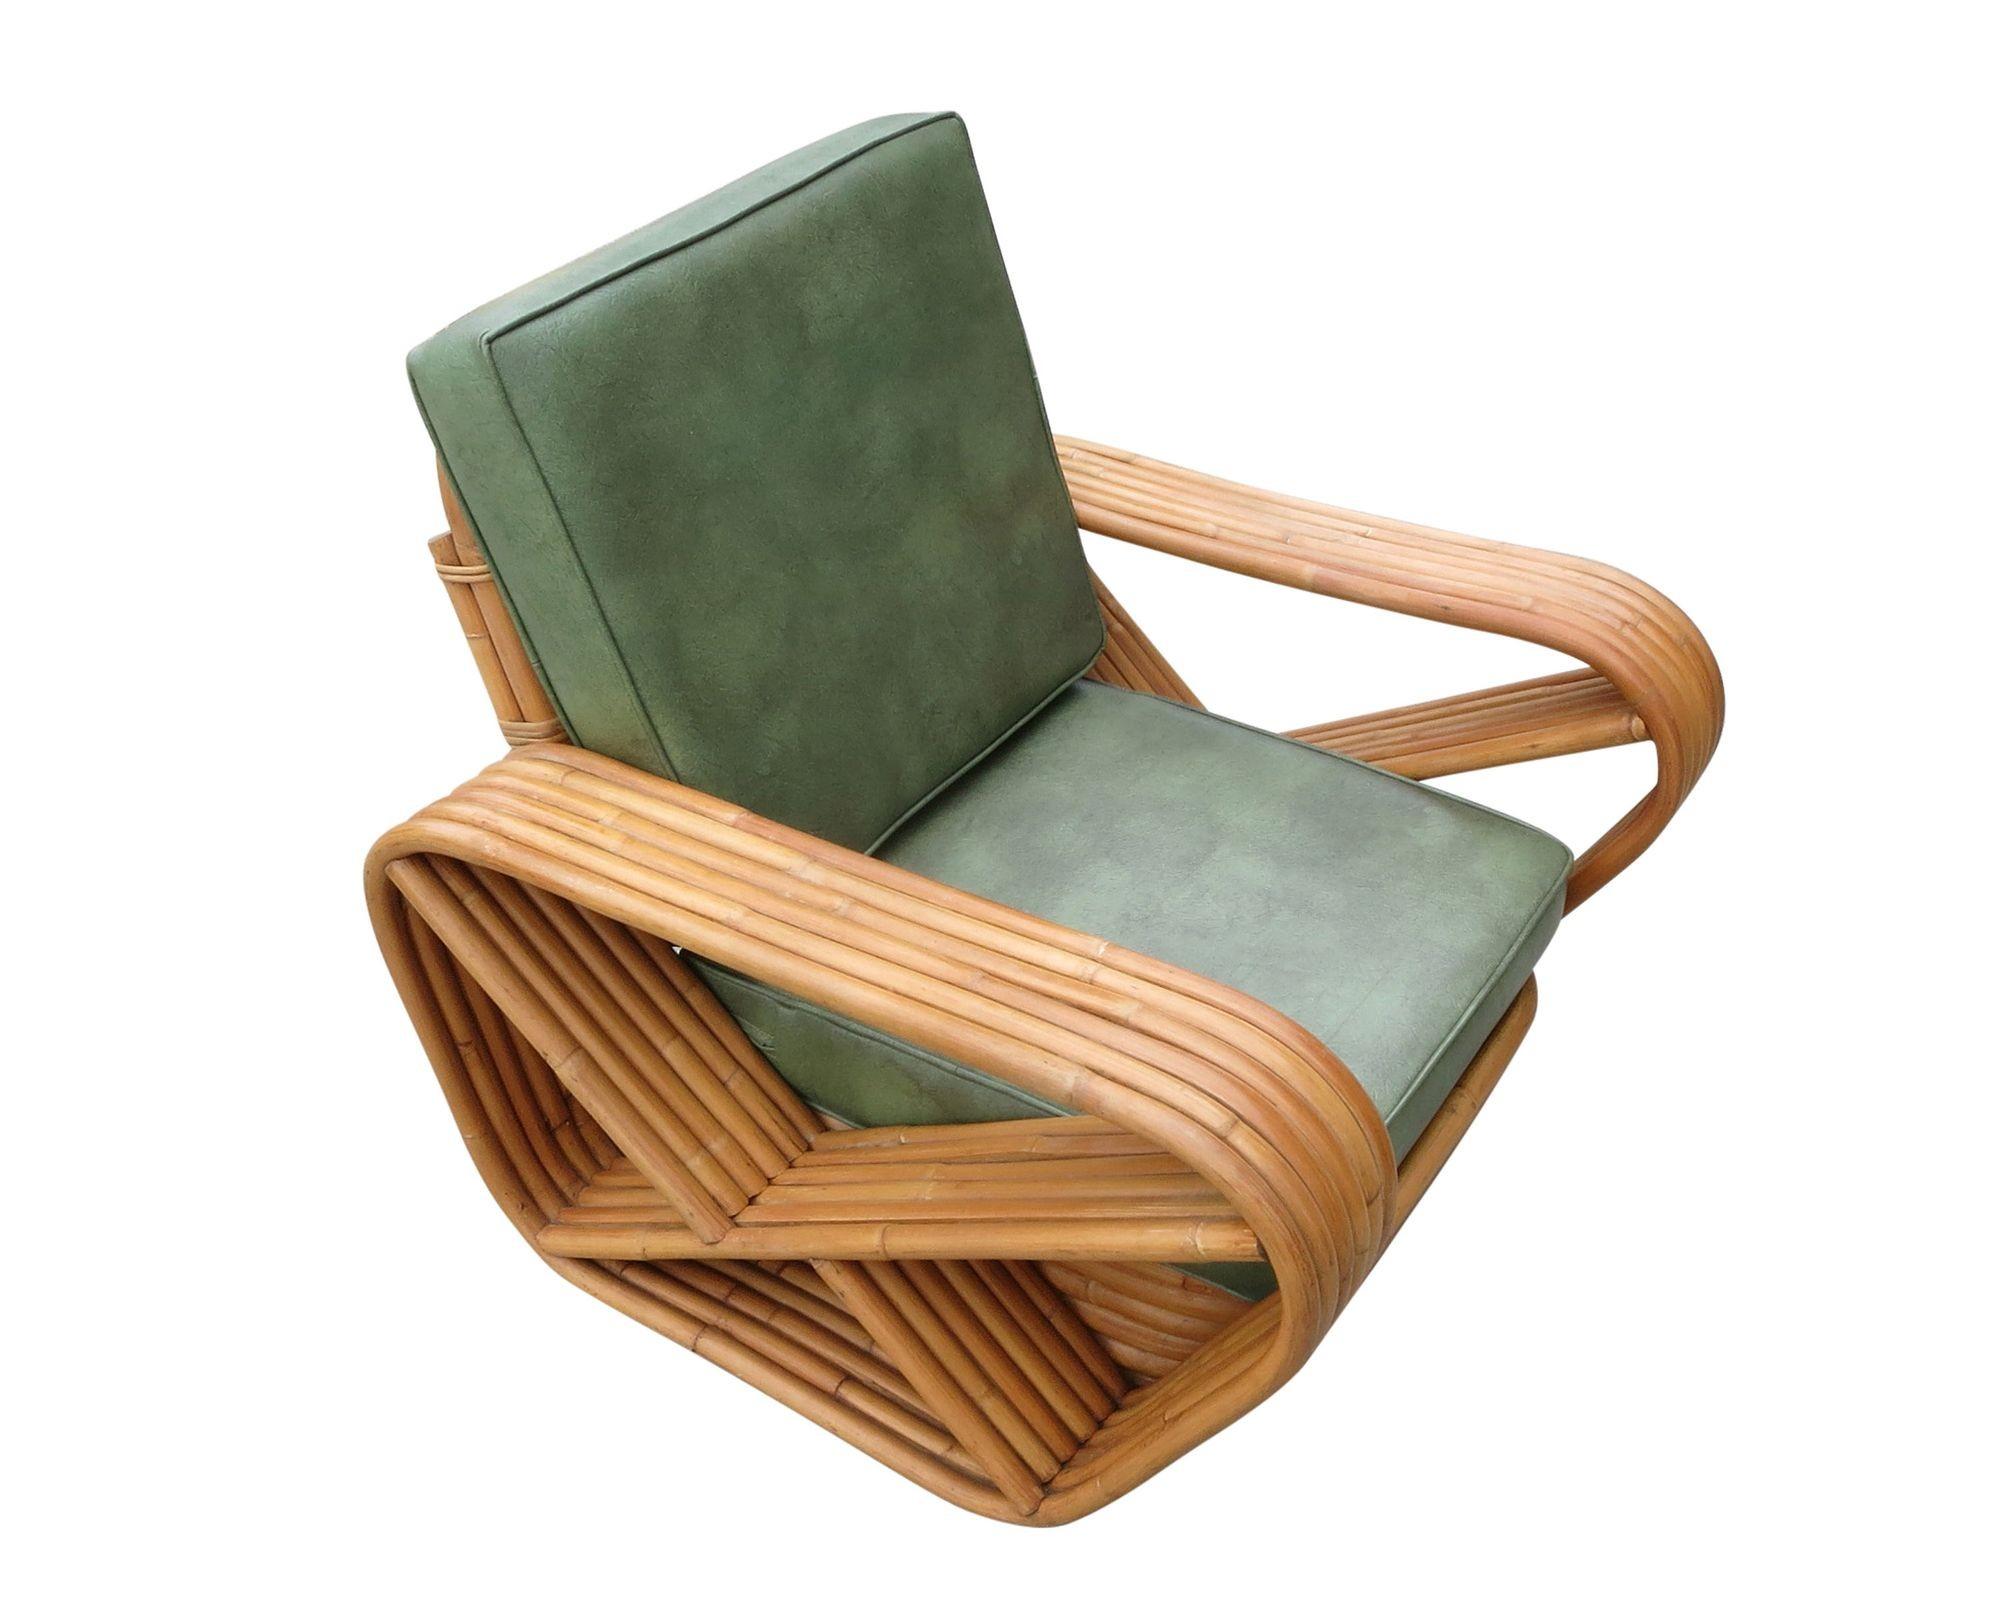 Art Deco-Sessel aus Rattan mit sechs Strängen, quadratischen Brezelarmen und einem klassischen, gestapelten Untergestell. Im Lieferumfang ist der passende gestapelte Rattan-Ottoman enthalten.

Maßgefertigte Kissen C.O.M. (Costumers Own Material)